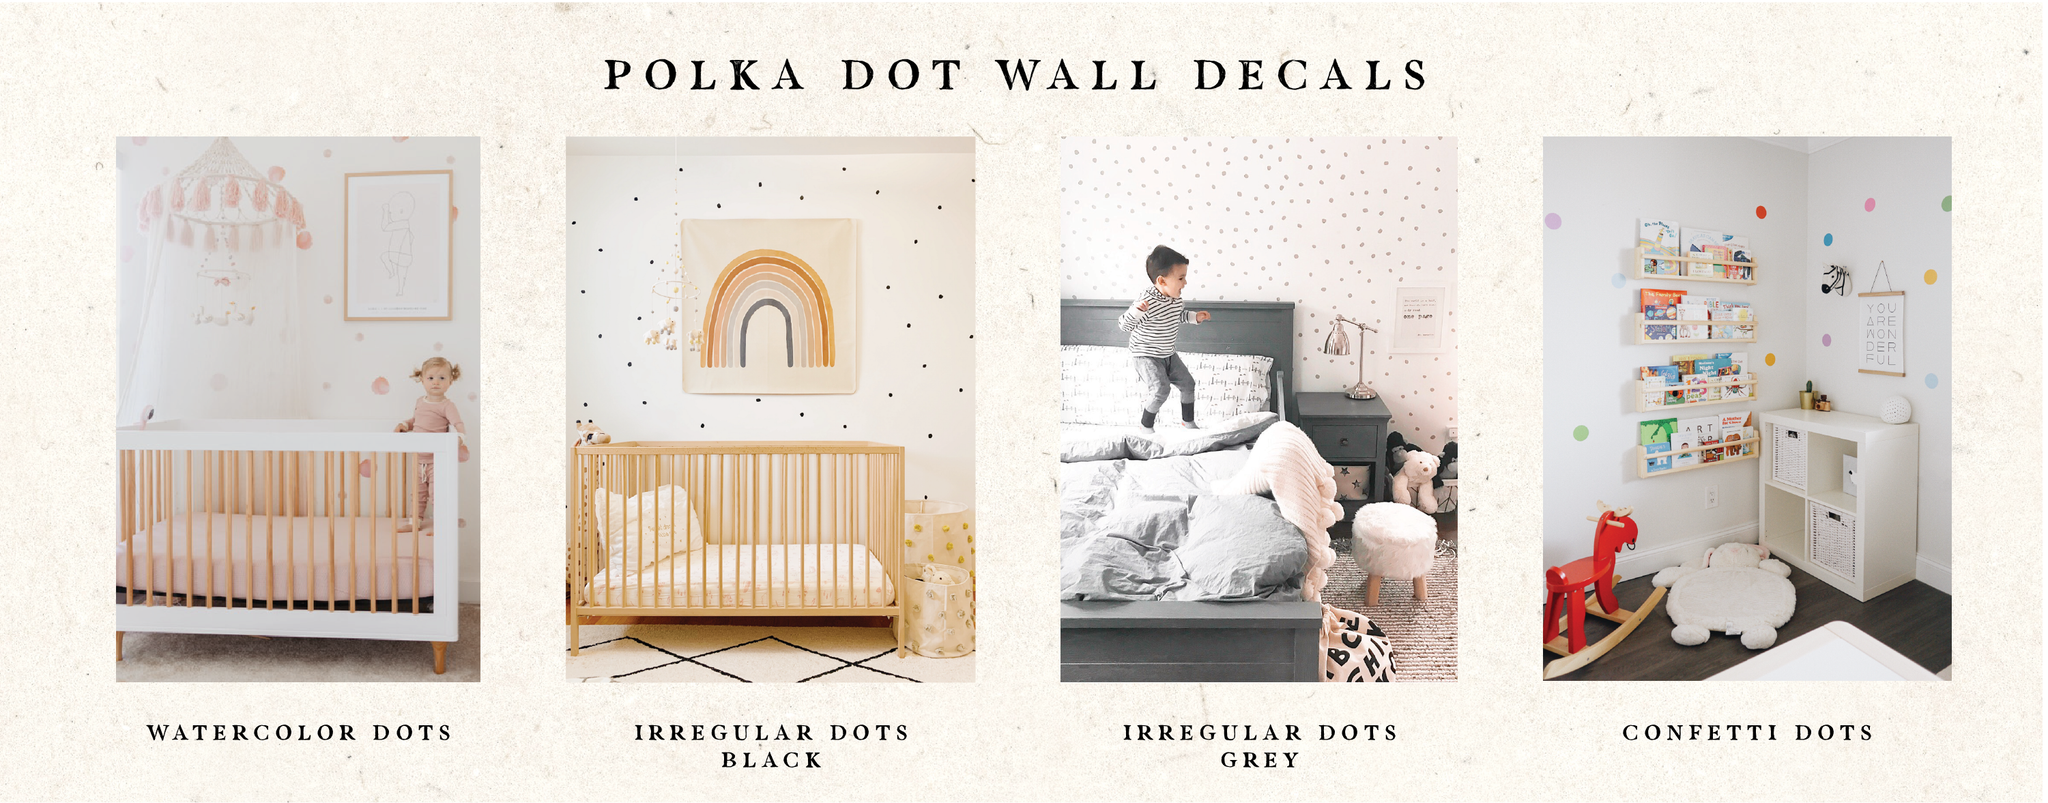 Polka dot wall decals